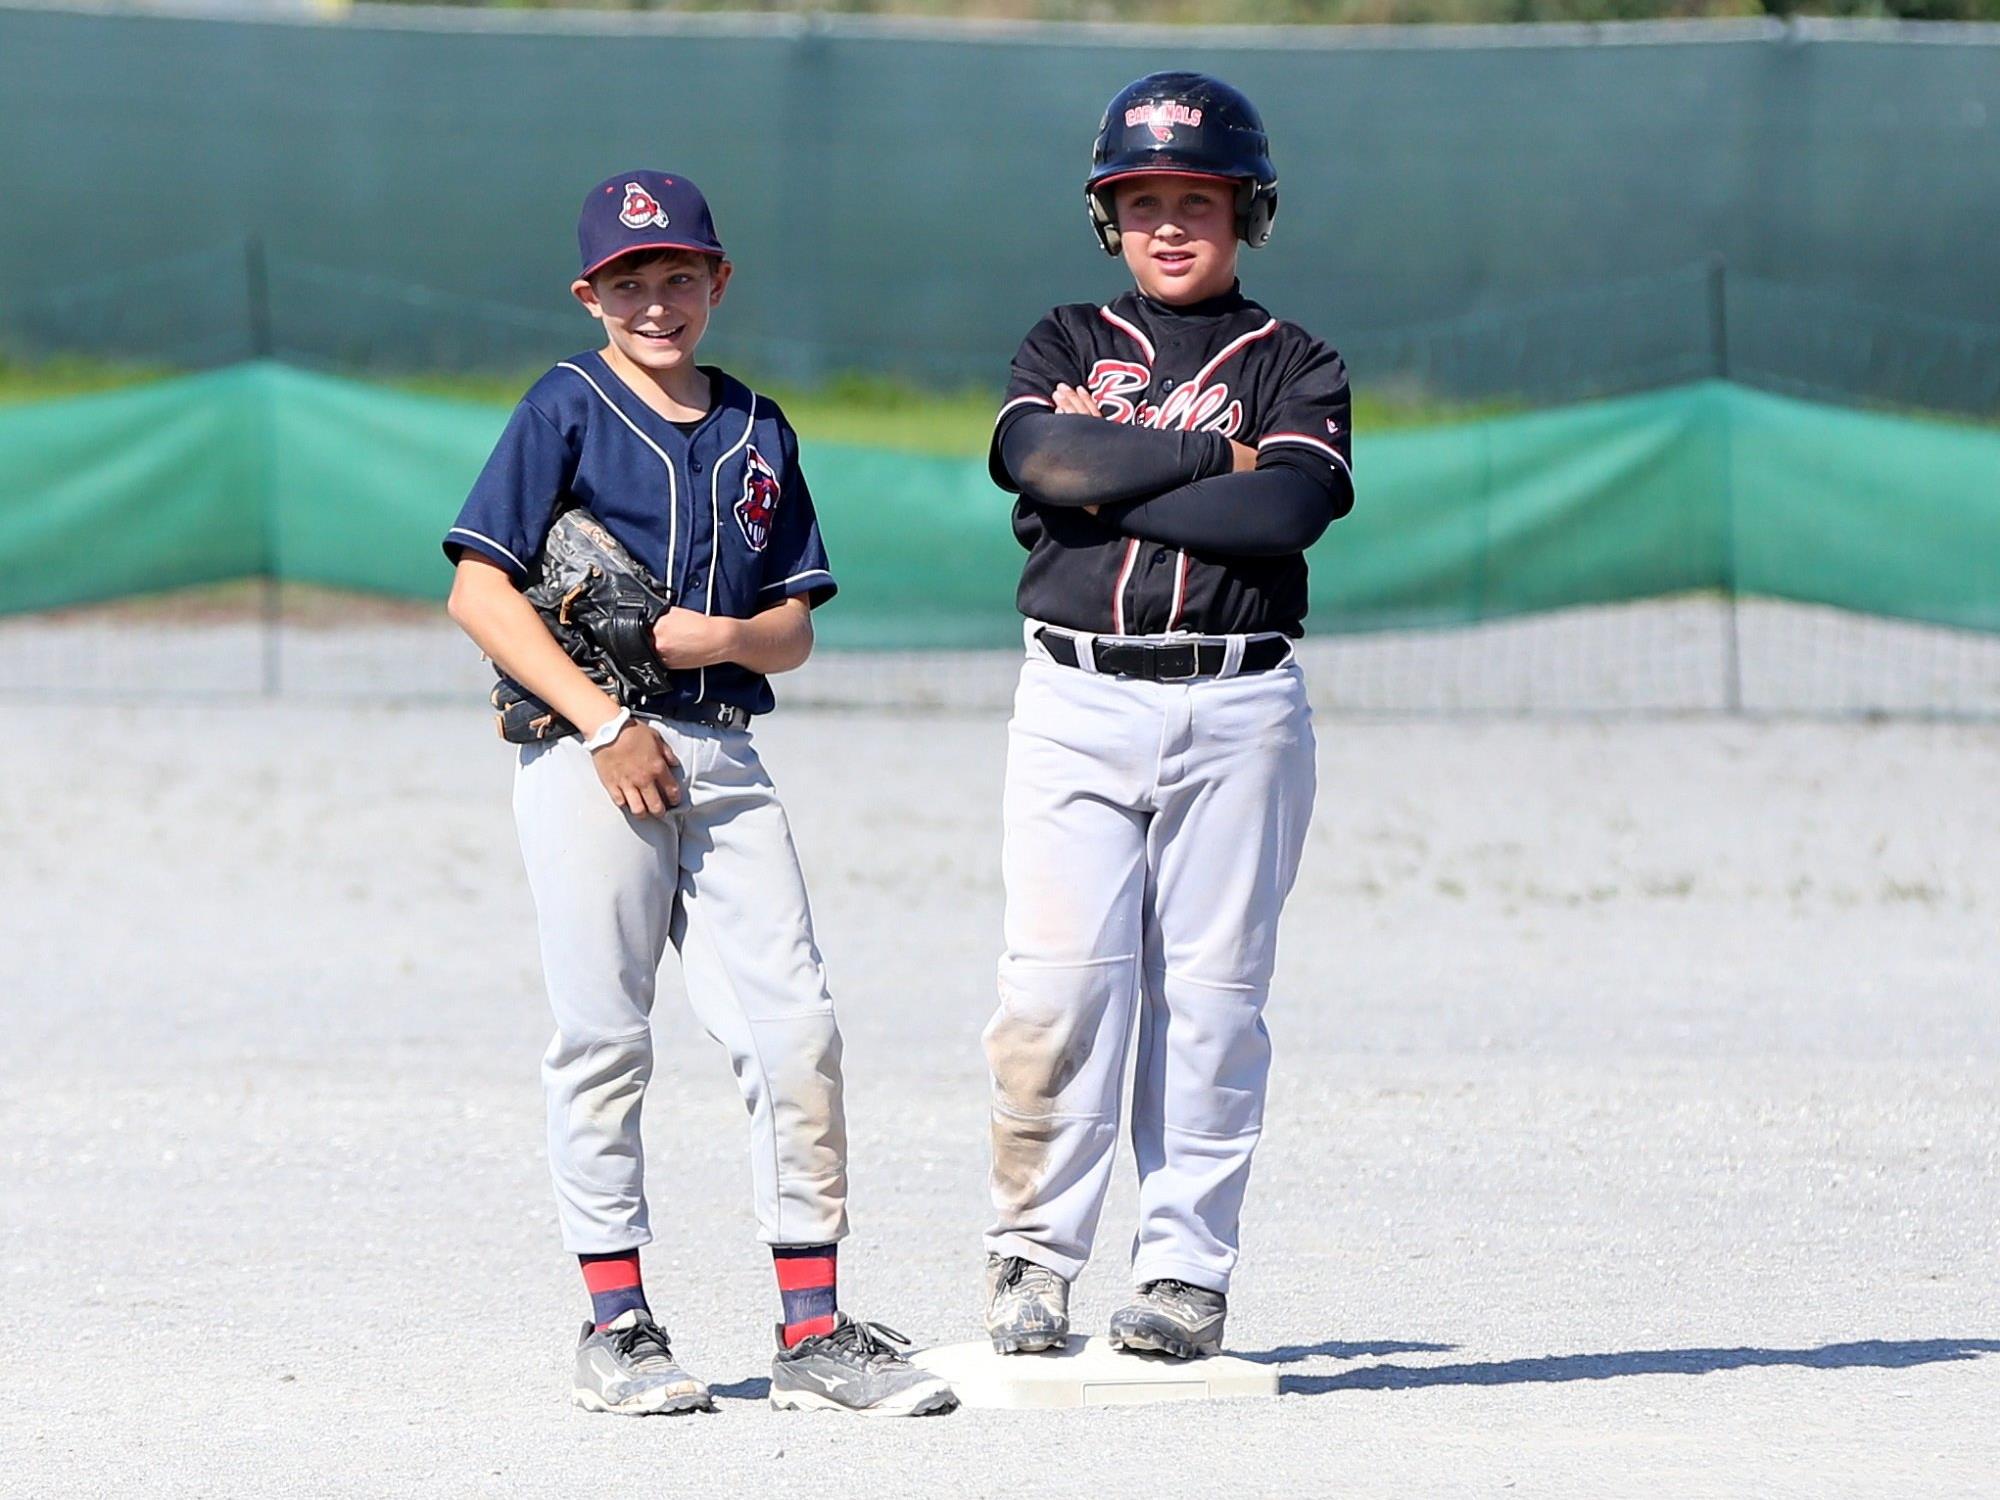 Die jungen Baseballer aus dem Ländle zeigten bei der Staatsmeisterschaft in Dornbirn und Hard ihr Können.